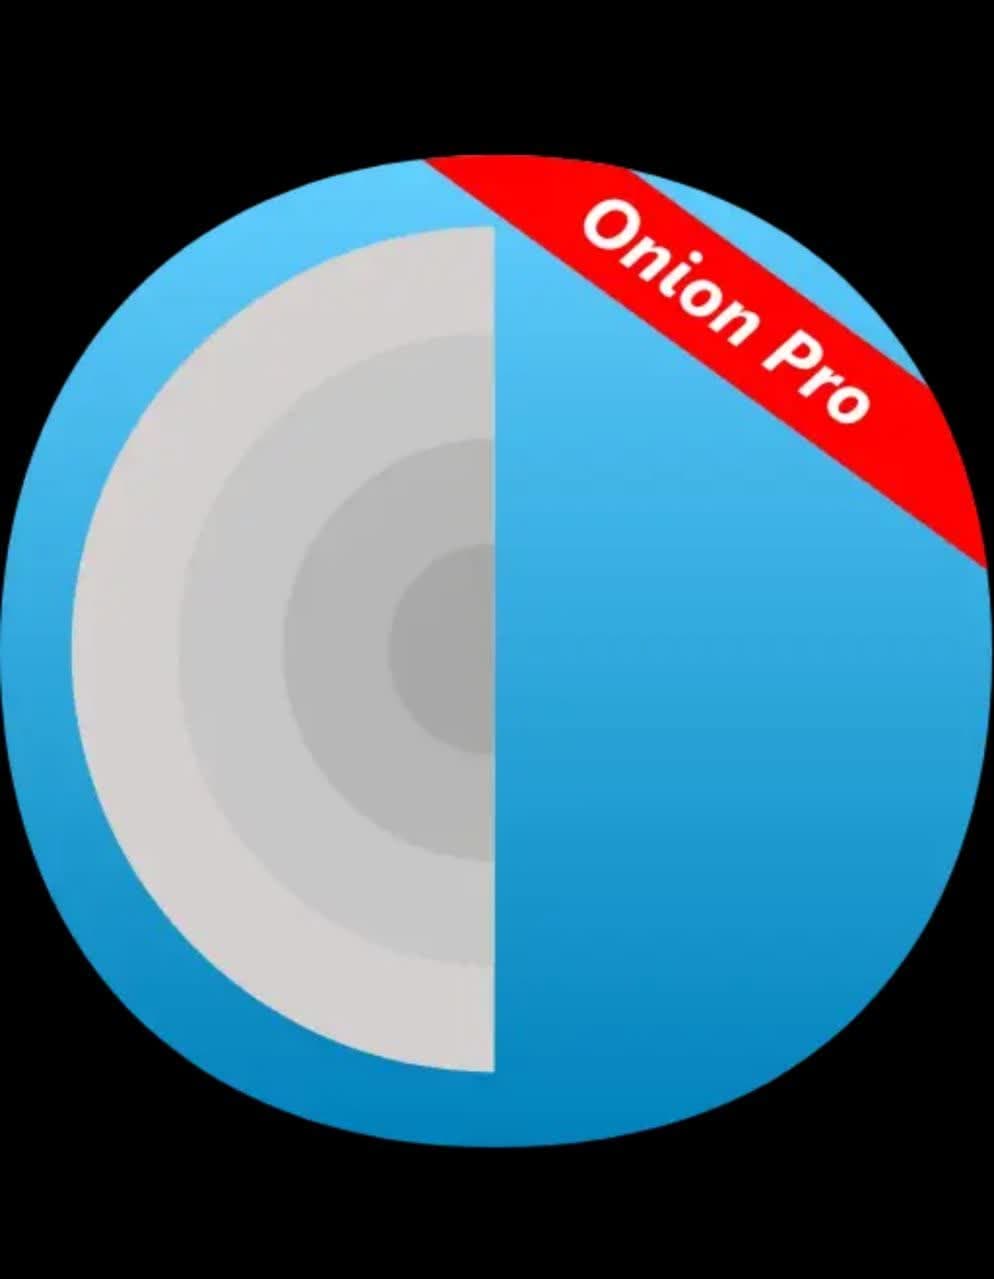 دانلود فیلتر شکن اندروید Onion Vpn pro نسخه جدید